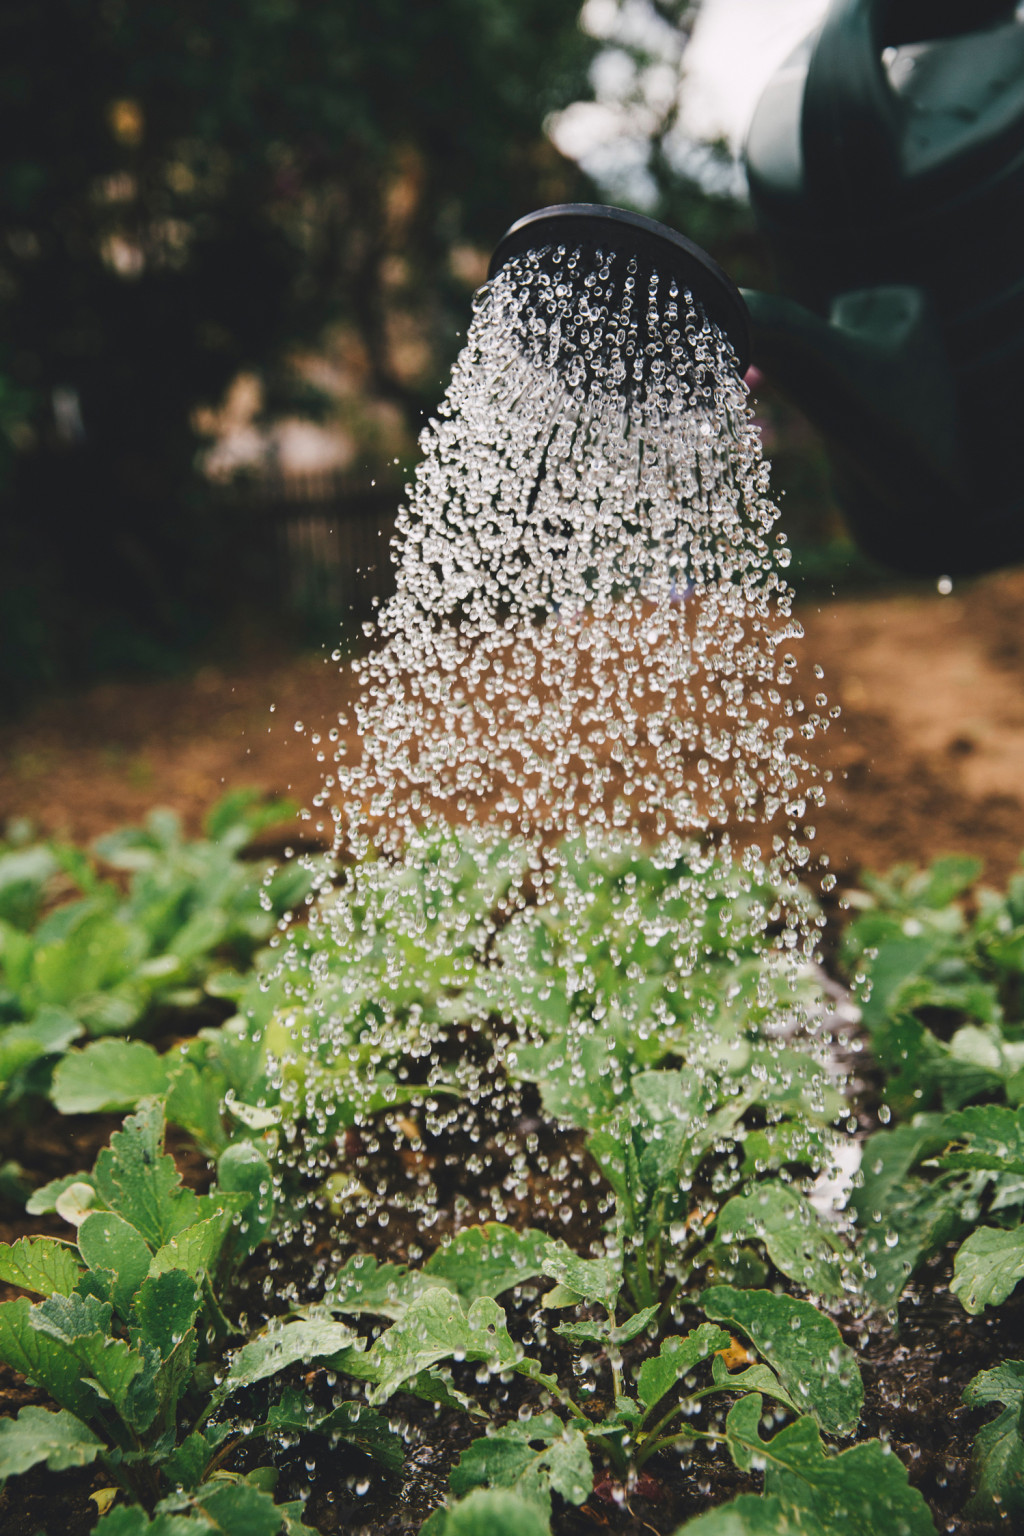 Installer un récupérateur d'eau de pluie : le guide – Blog BUT